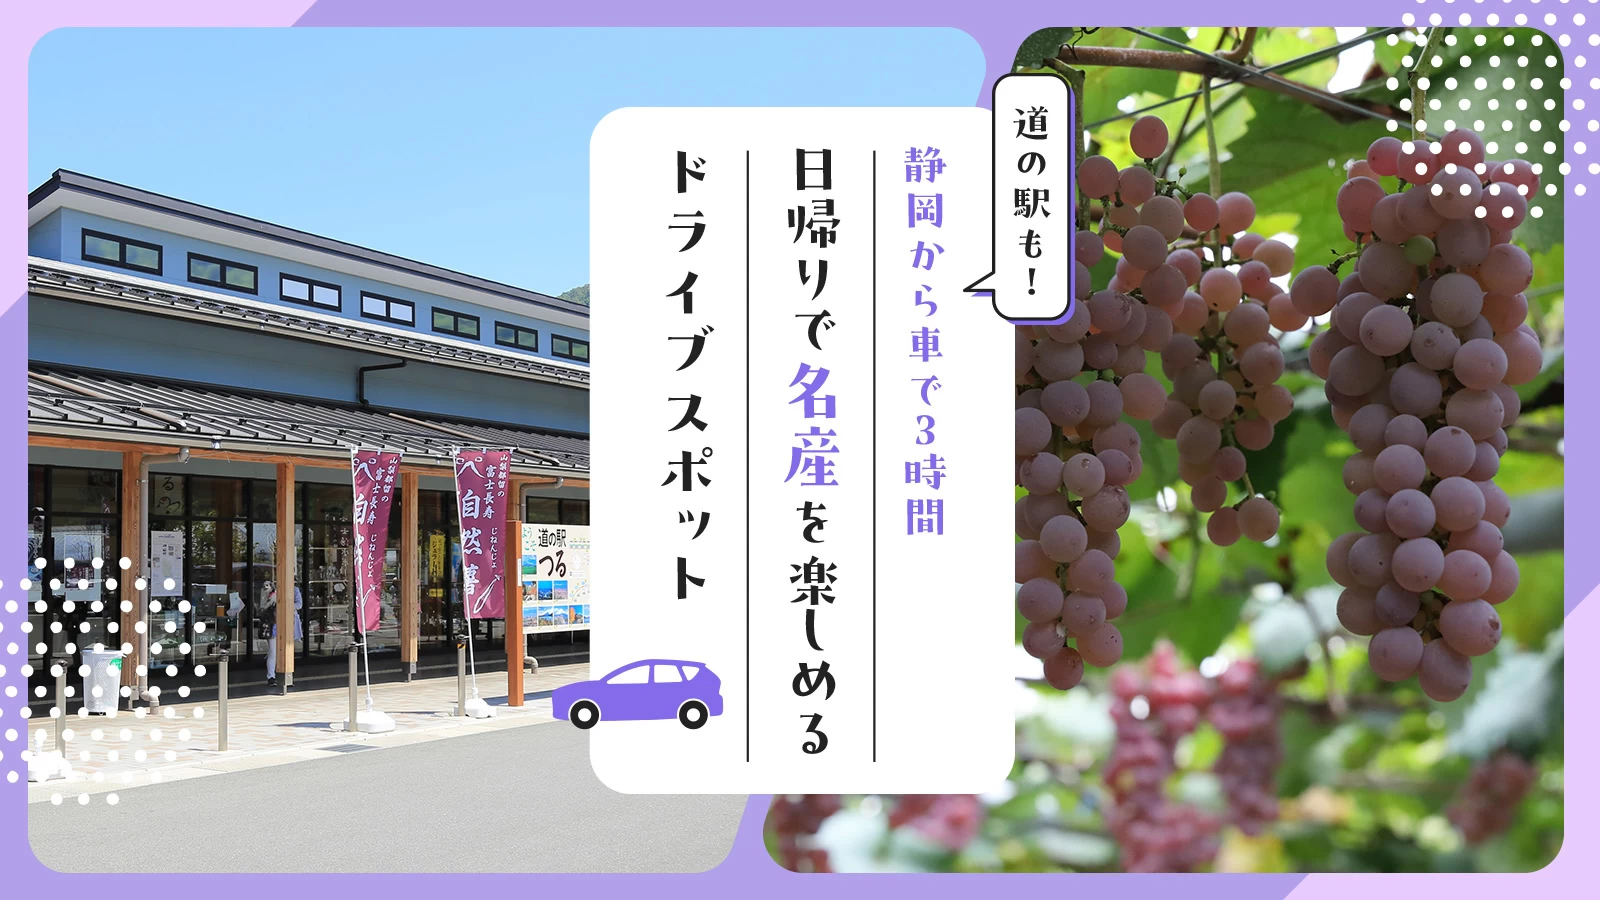 【静岡から車で3時間】道の駅も！日帰りで名産を楽しめるドライブスポット21選   